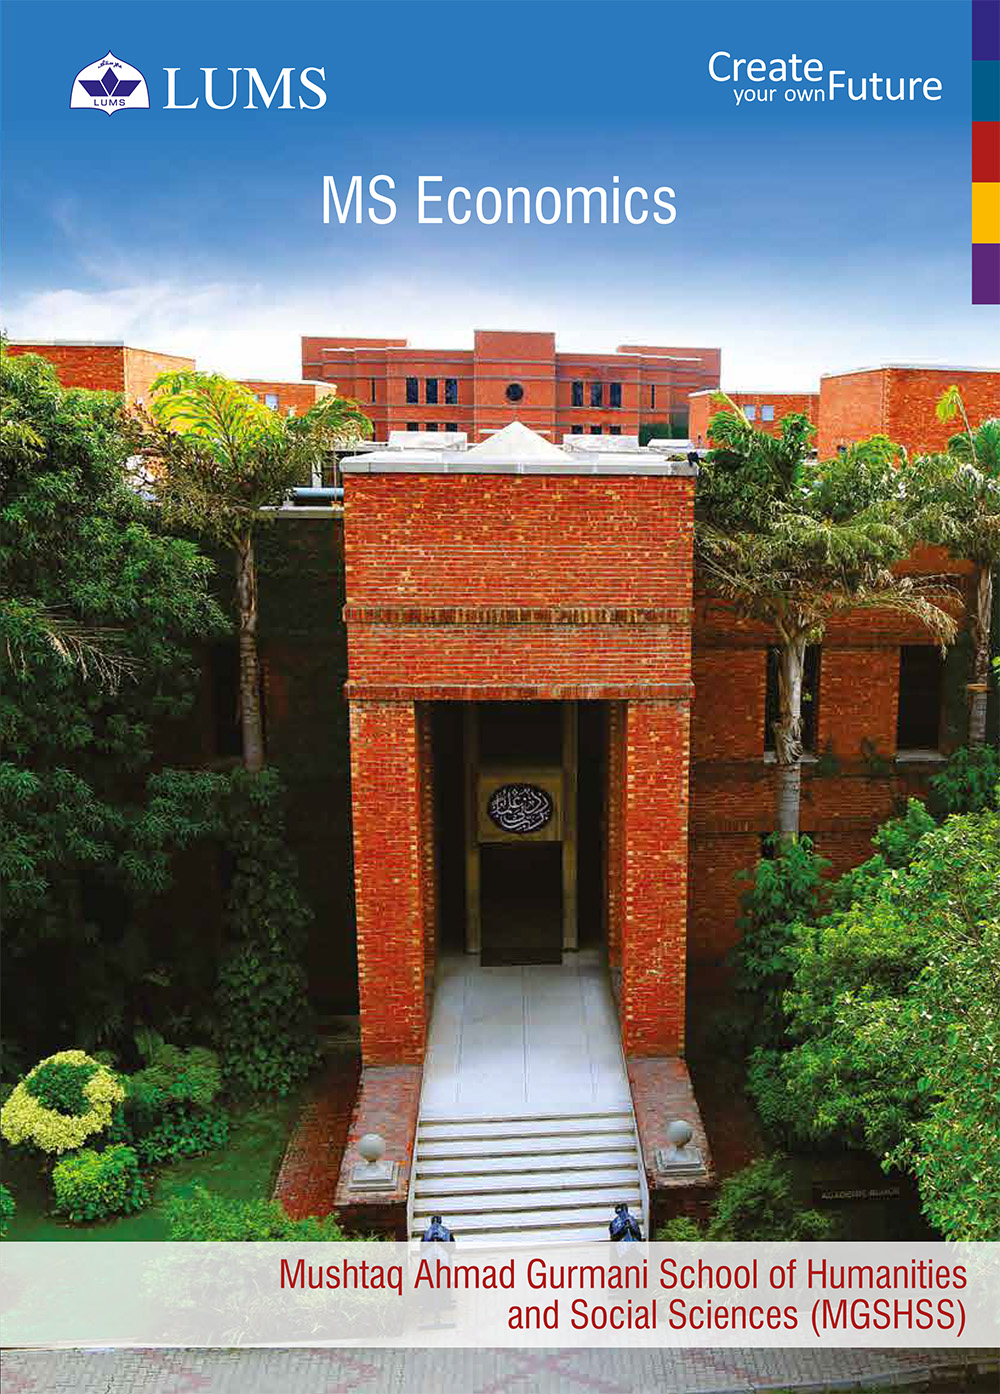  MS Economics Flyer